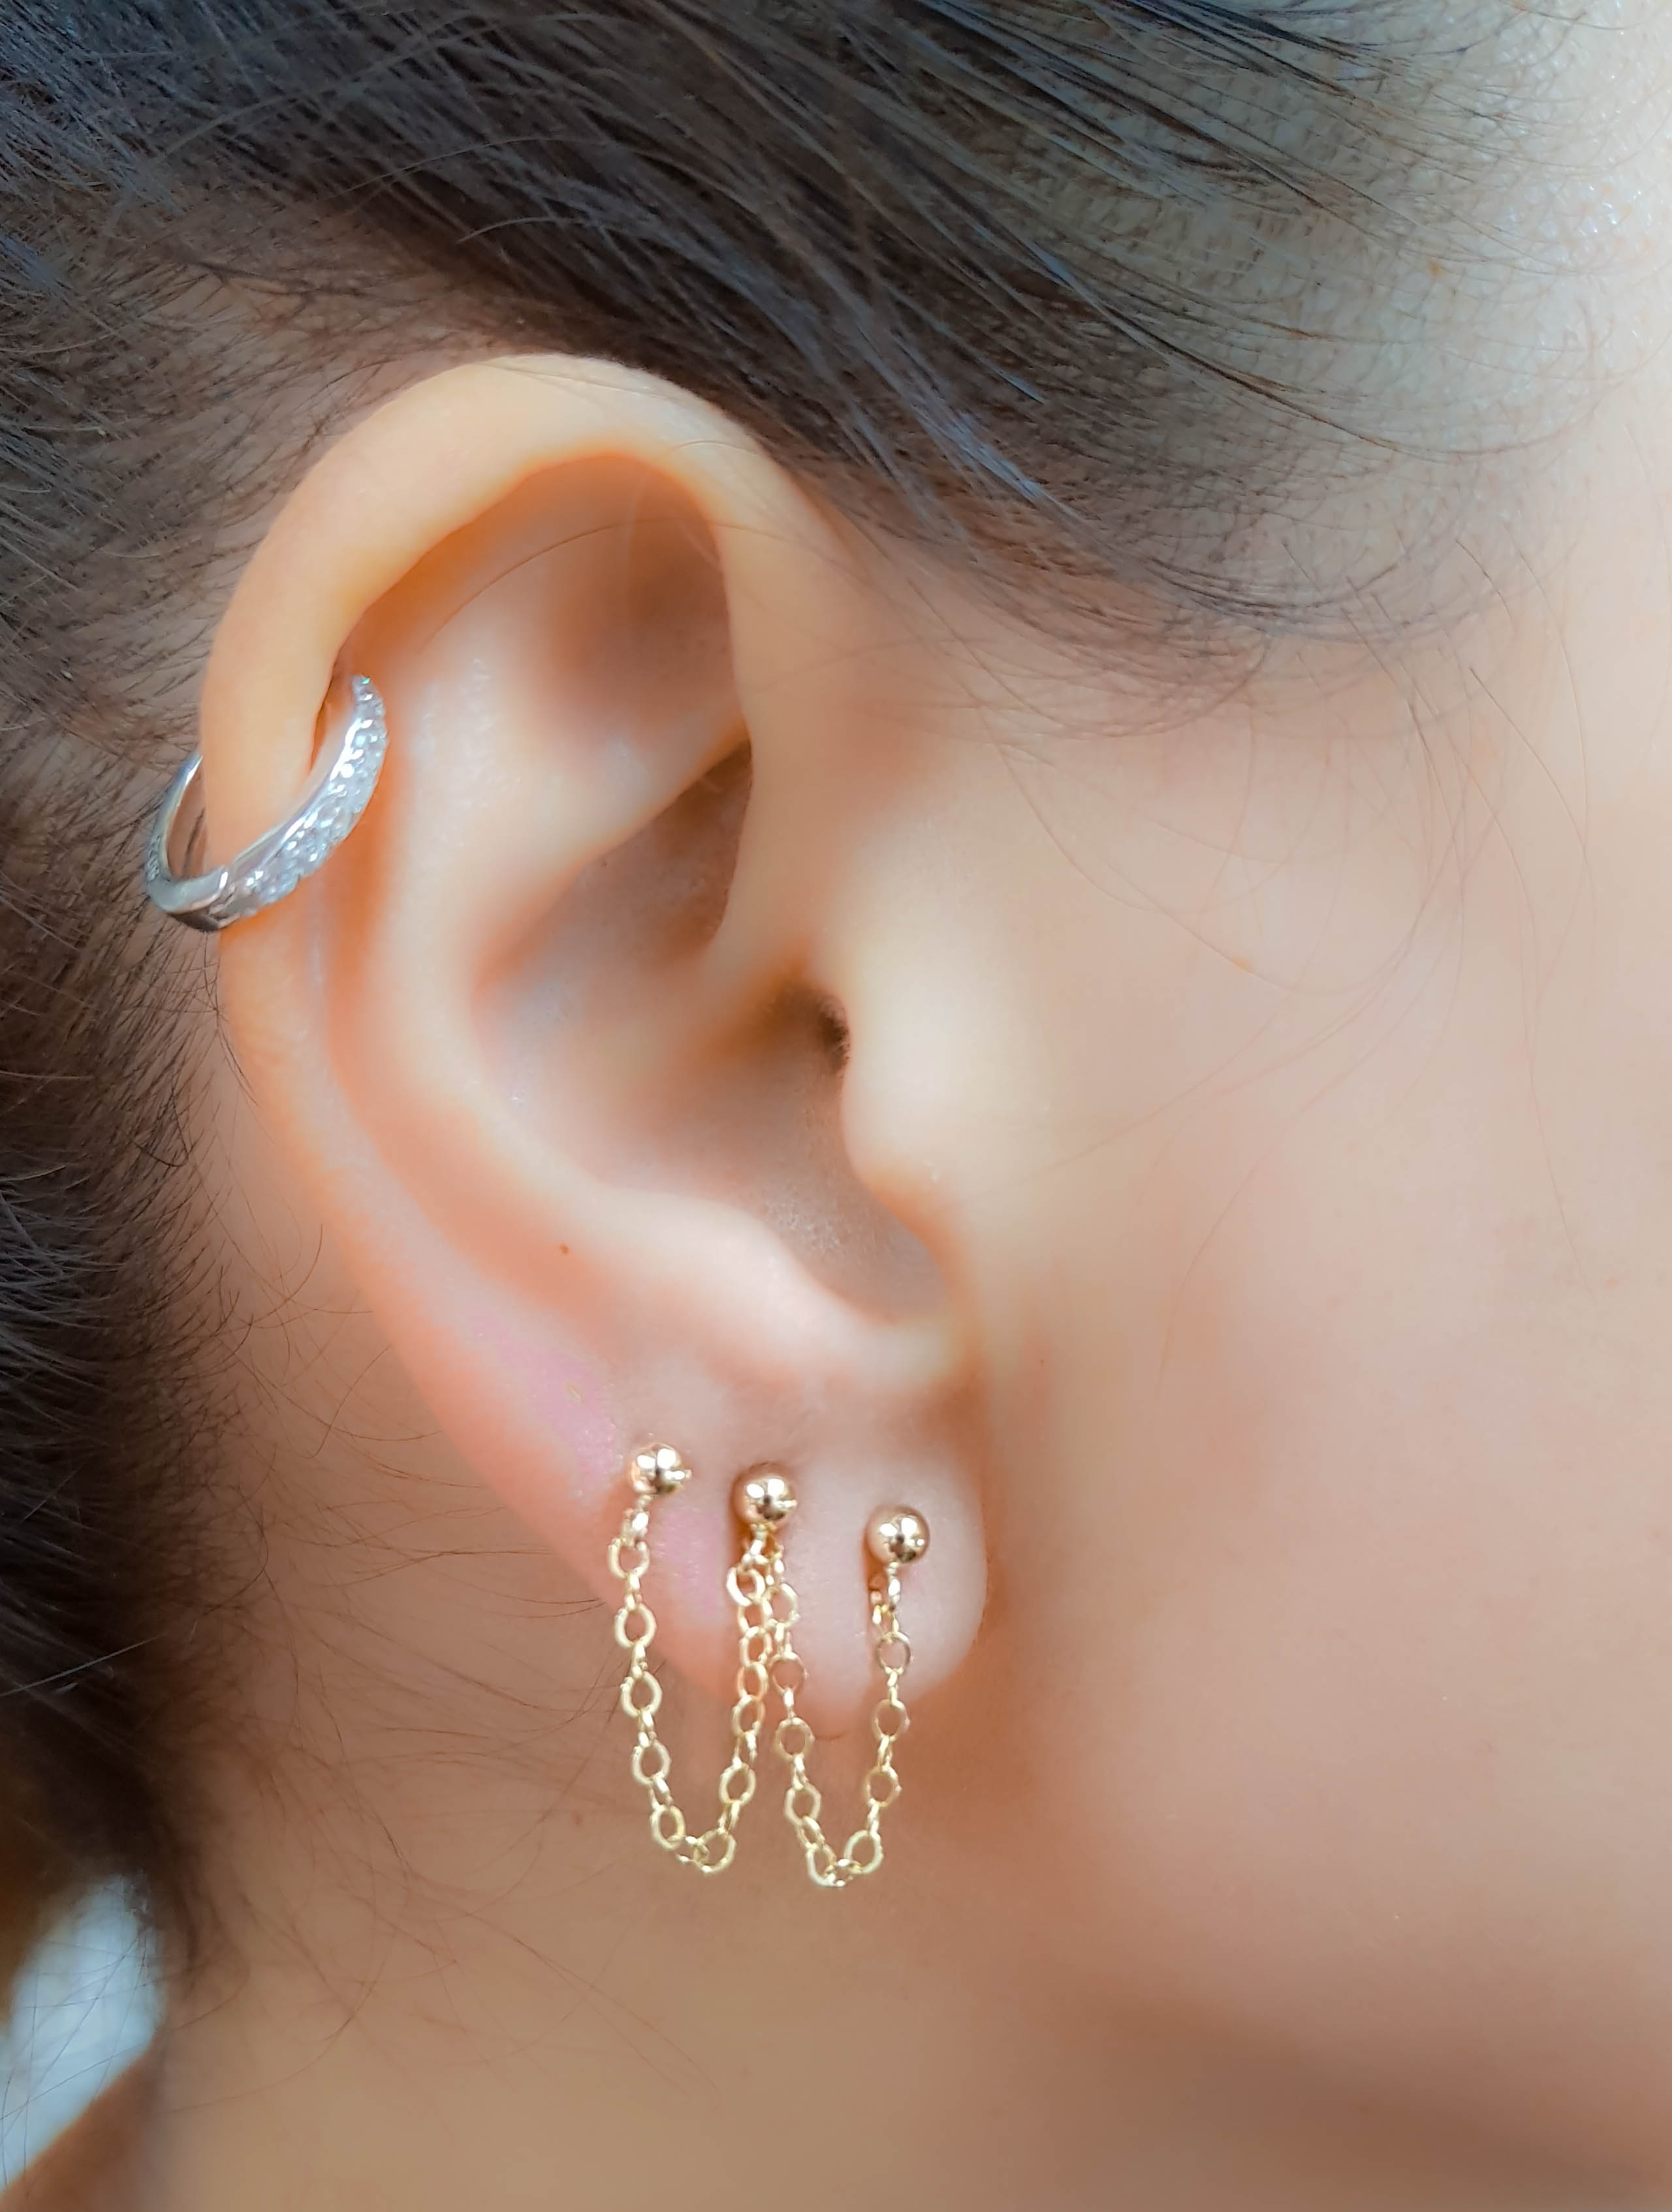 Double Triple Four Piercing Chain Earring - Moonli Designs